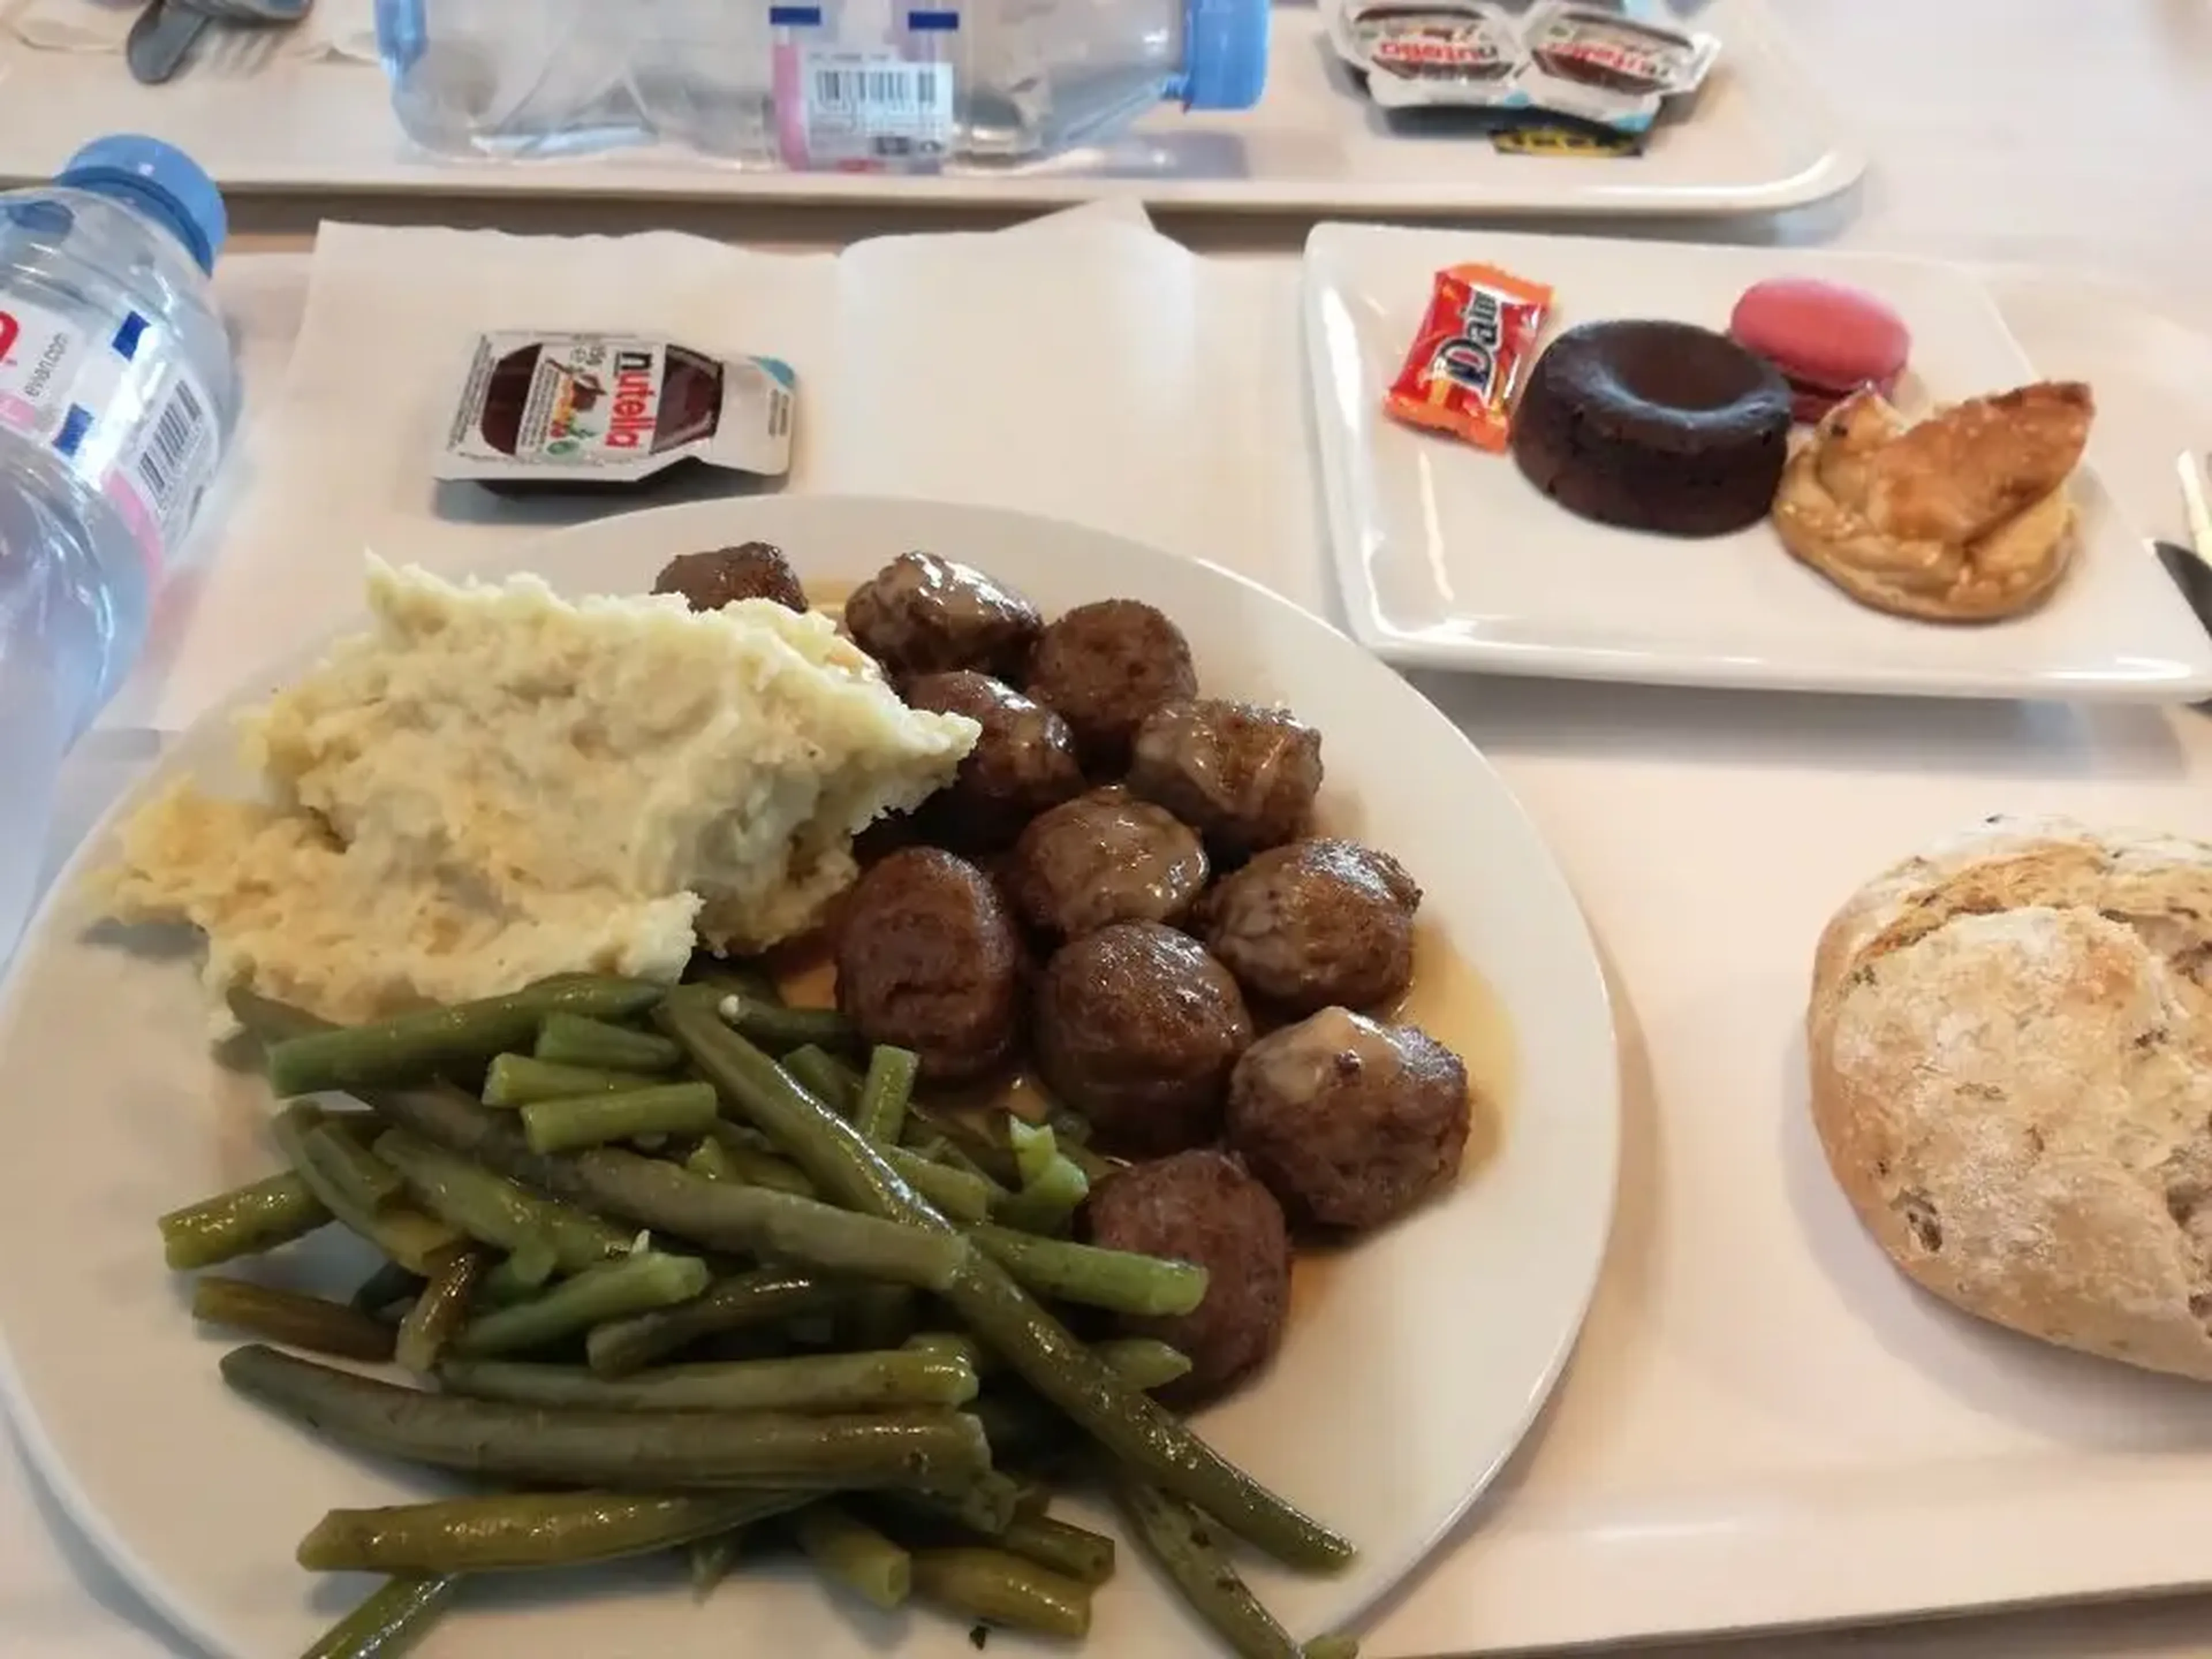 Un Ikea francés ofrece macarons de postre, además de albóndigas y judías verdes.